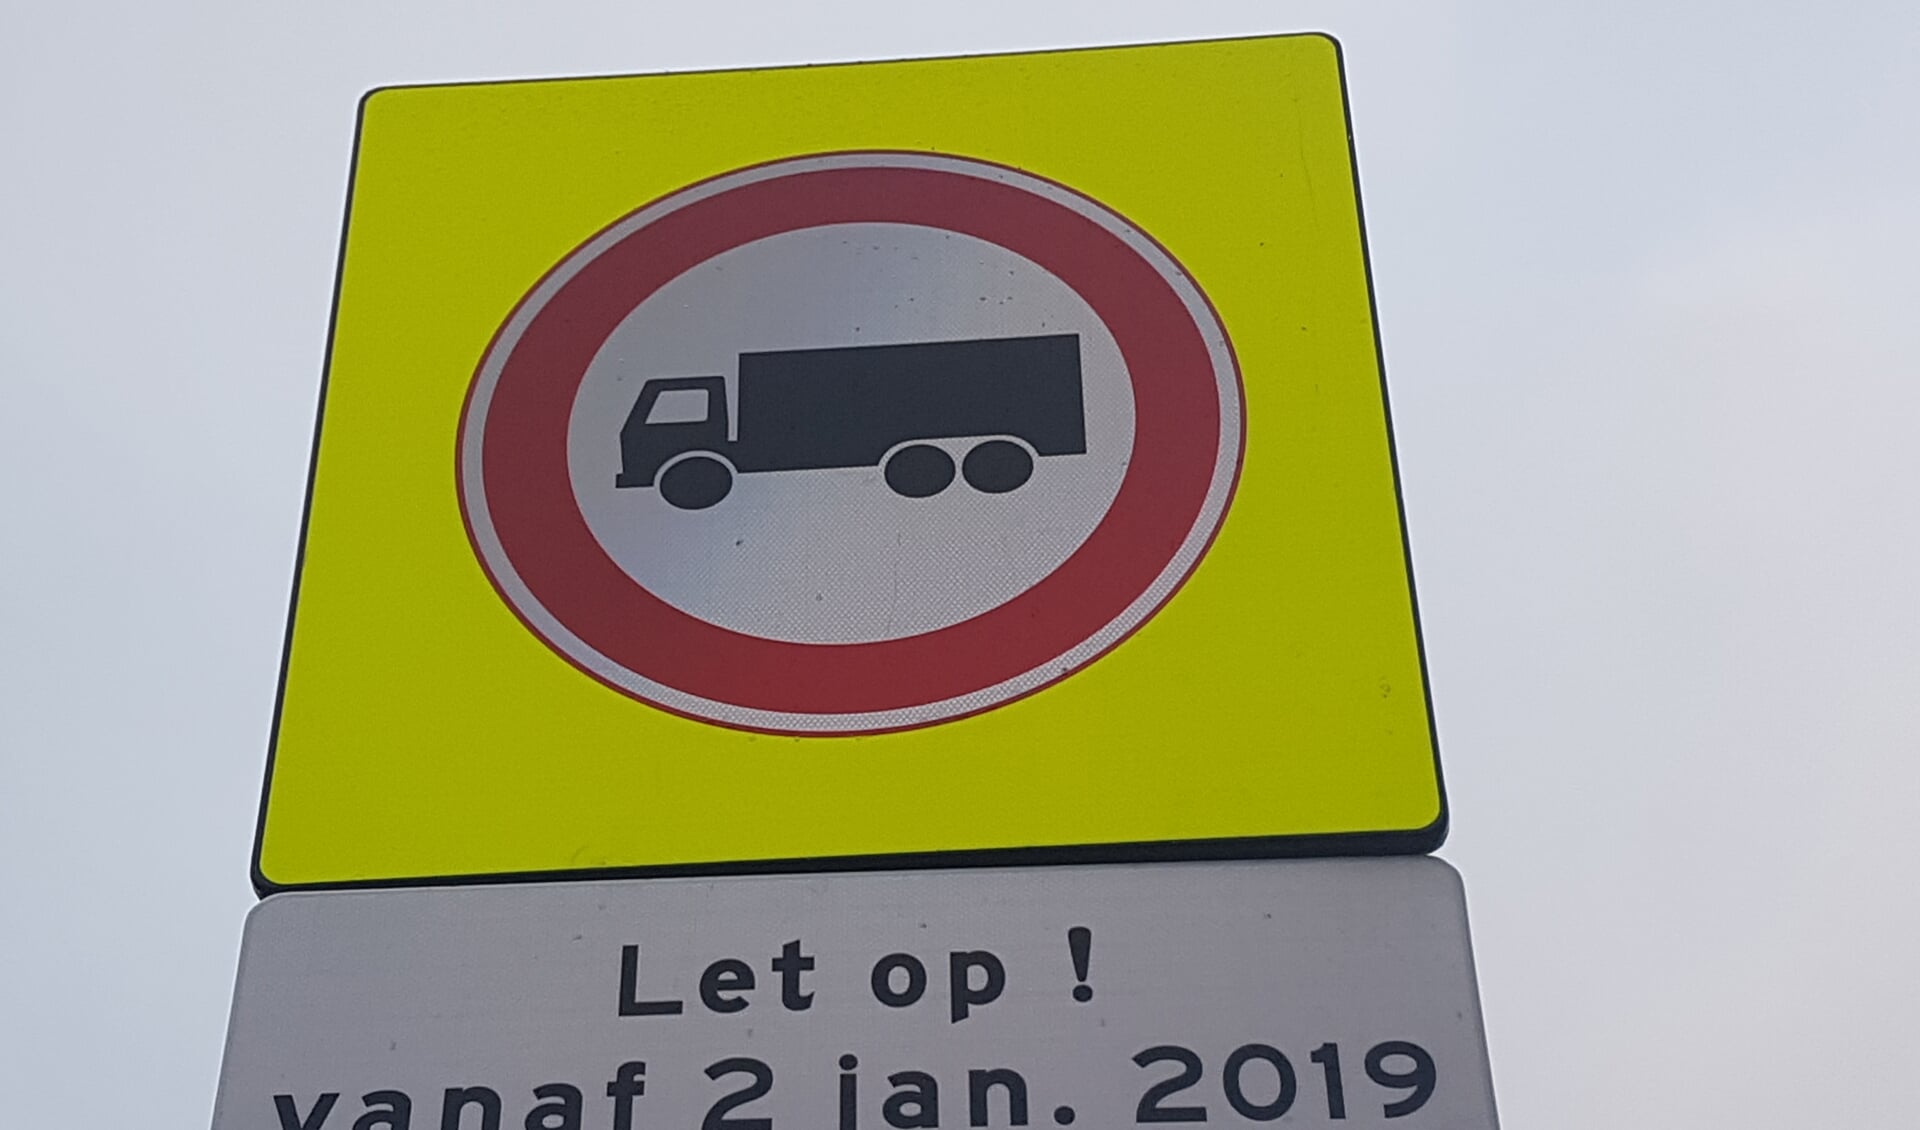 De gemeente Oost Gelre heeft maatregelen genomen om de gevaarlijke situatie op de het kruispunt Rabobank tegen te gaan. Foto: Kyra Broshuis